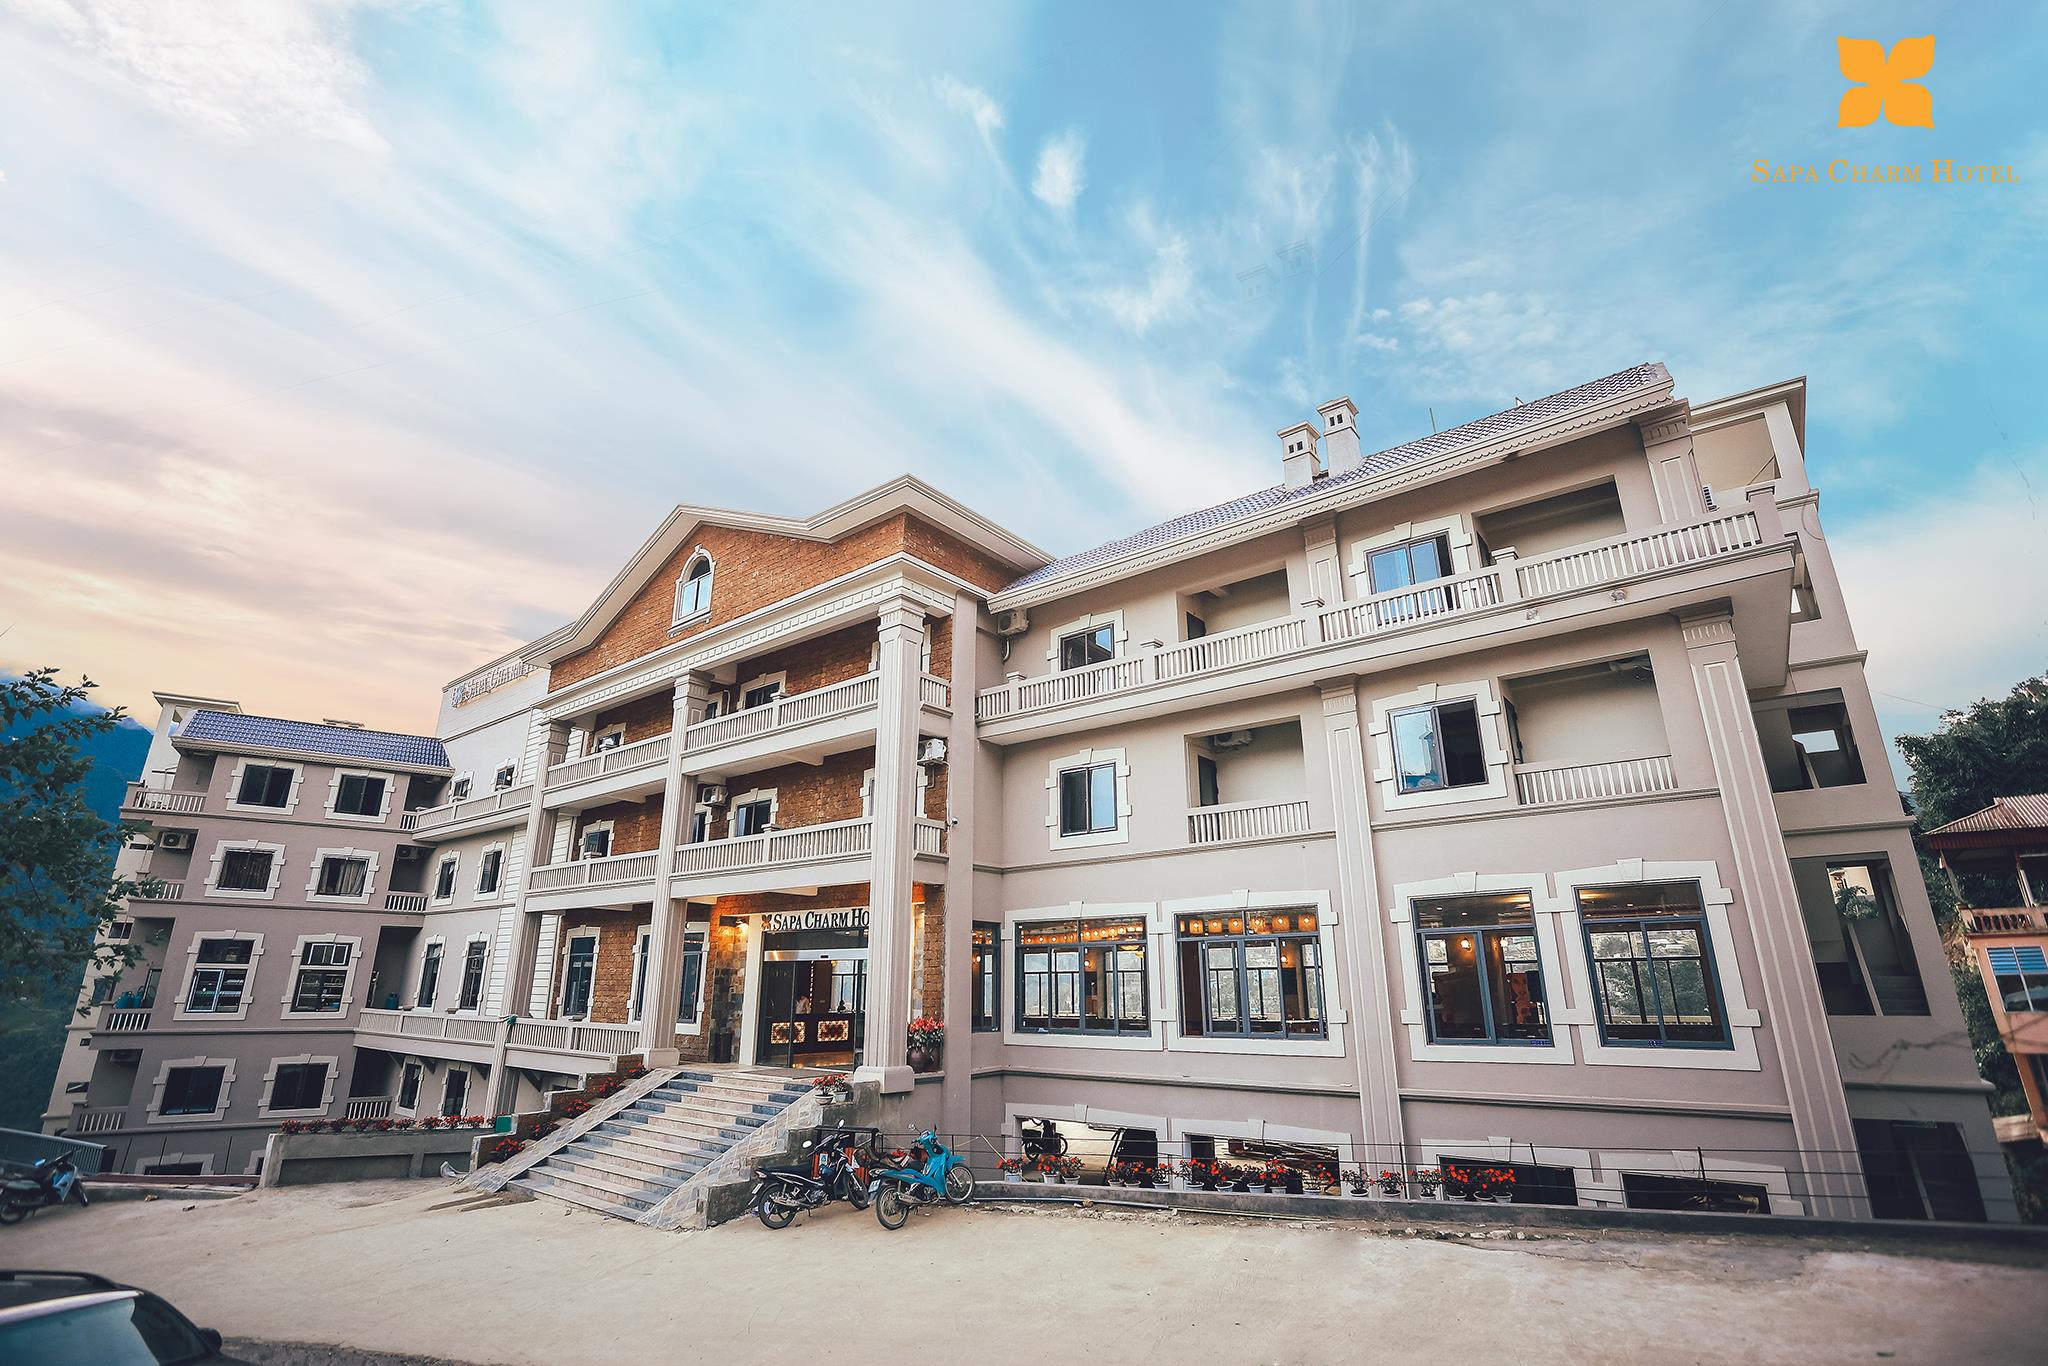 Hà Nội – Sapa tại Charm Hotel tiêu chuẩn 4 sao